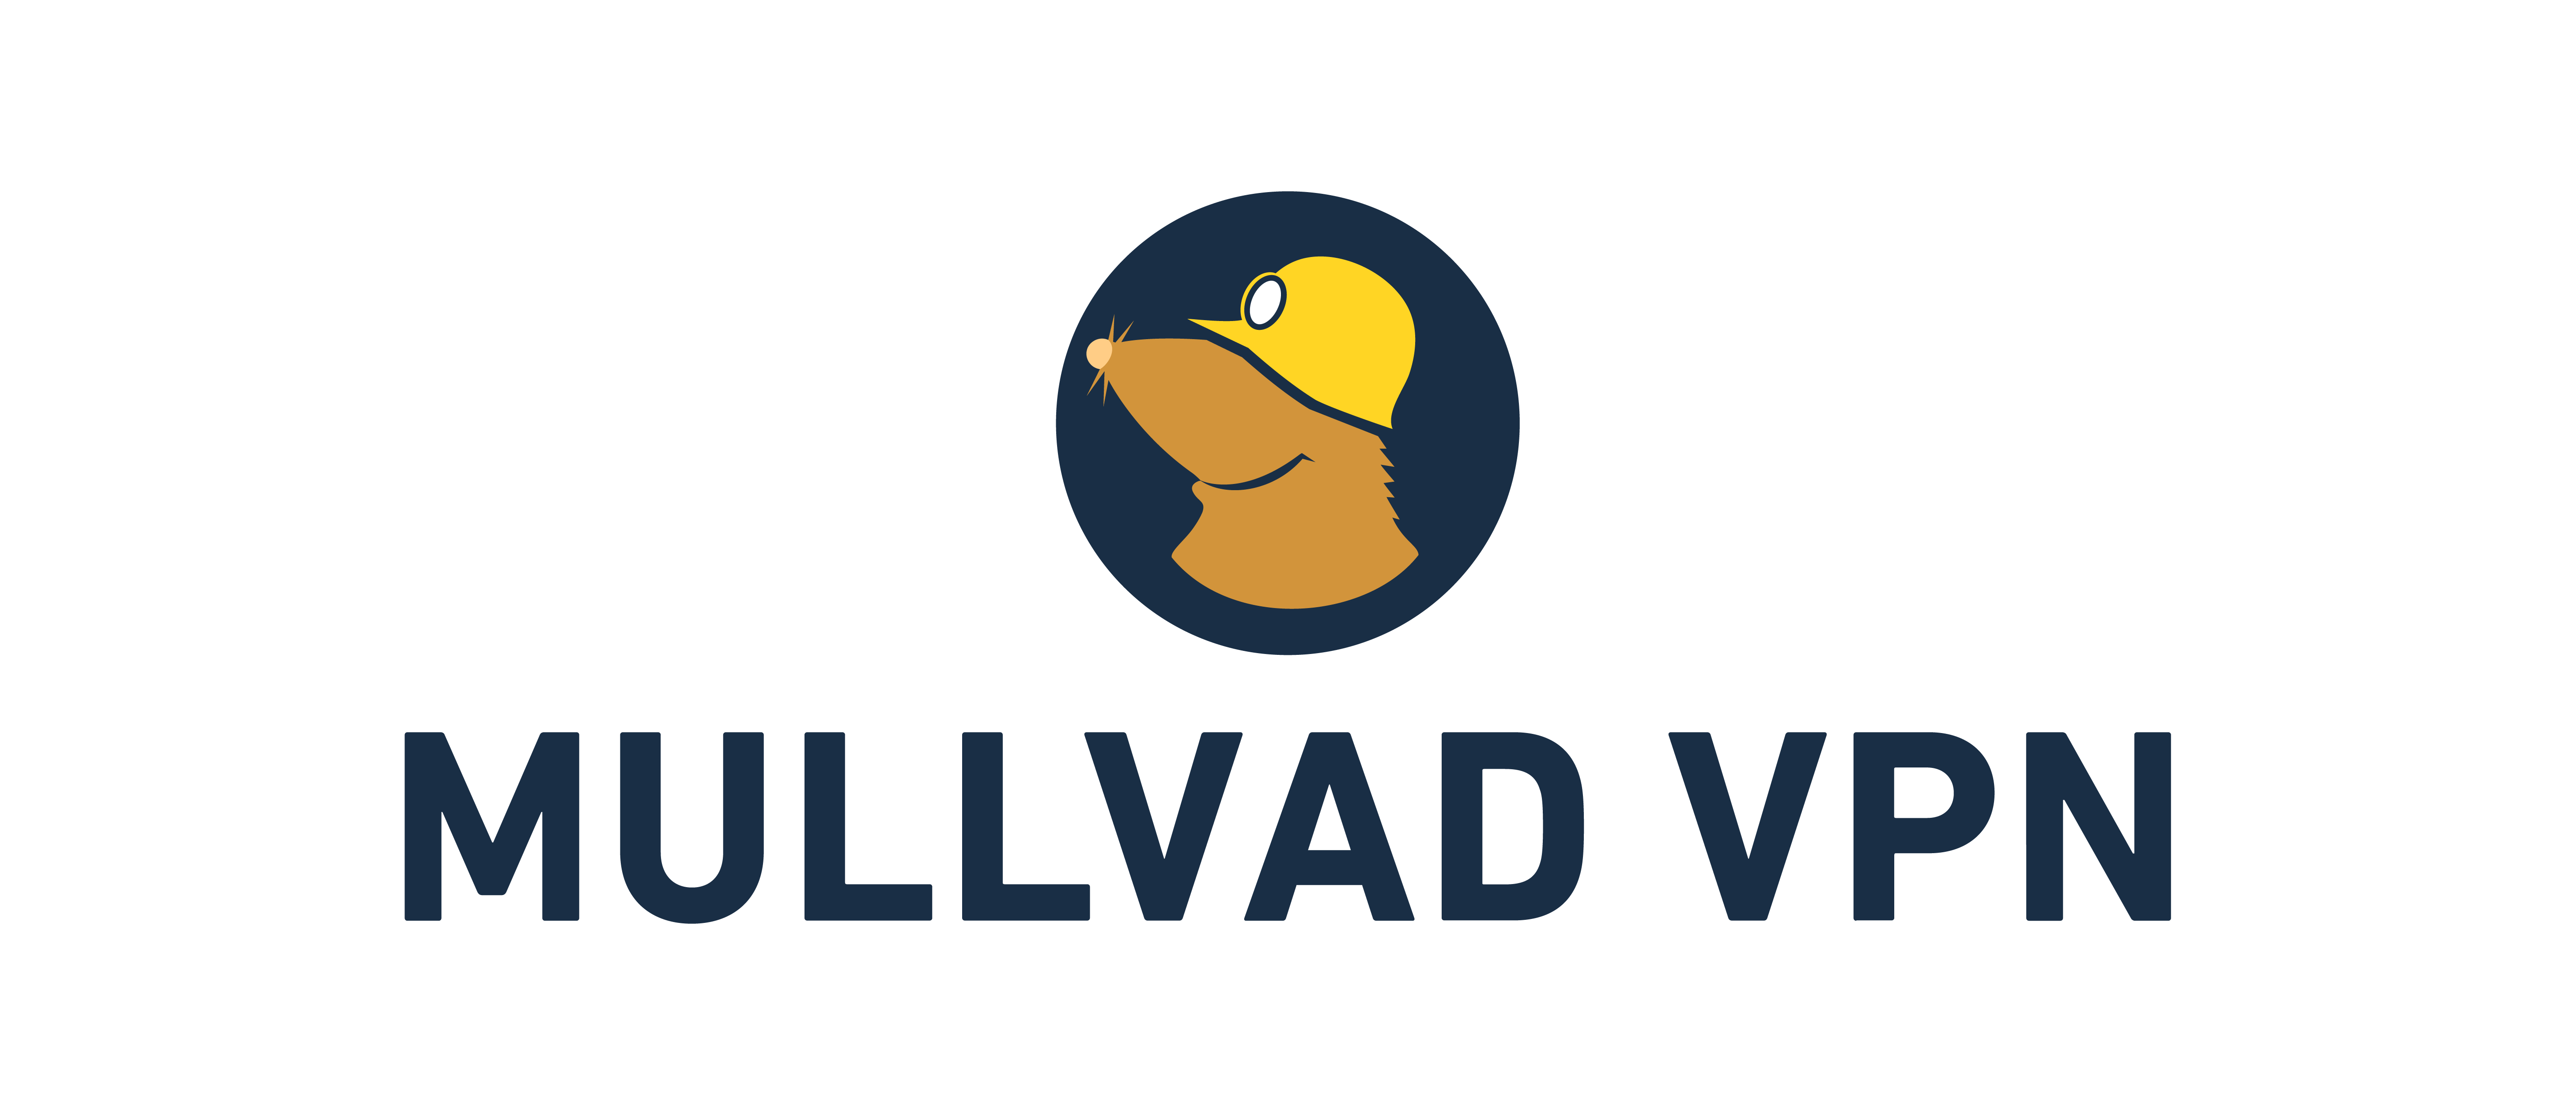 Mullvad VPN Logo Color positive